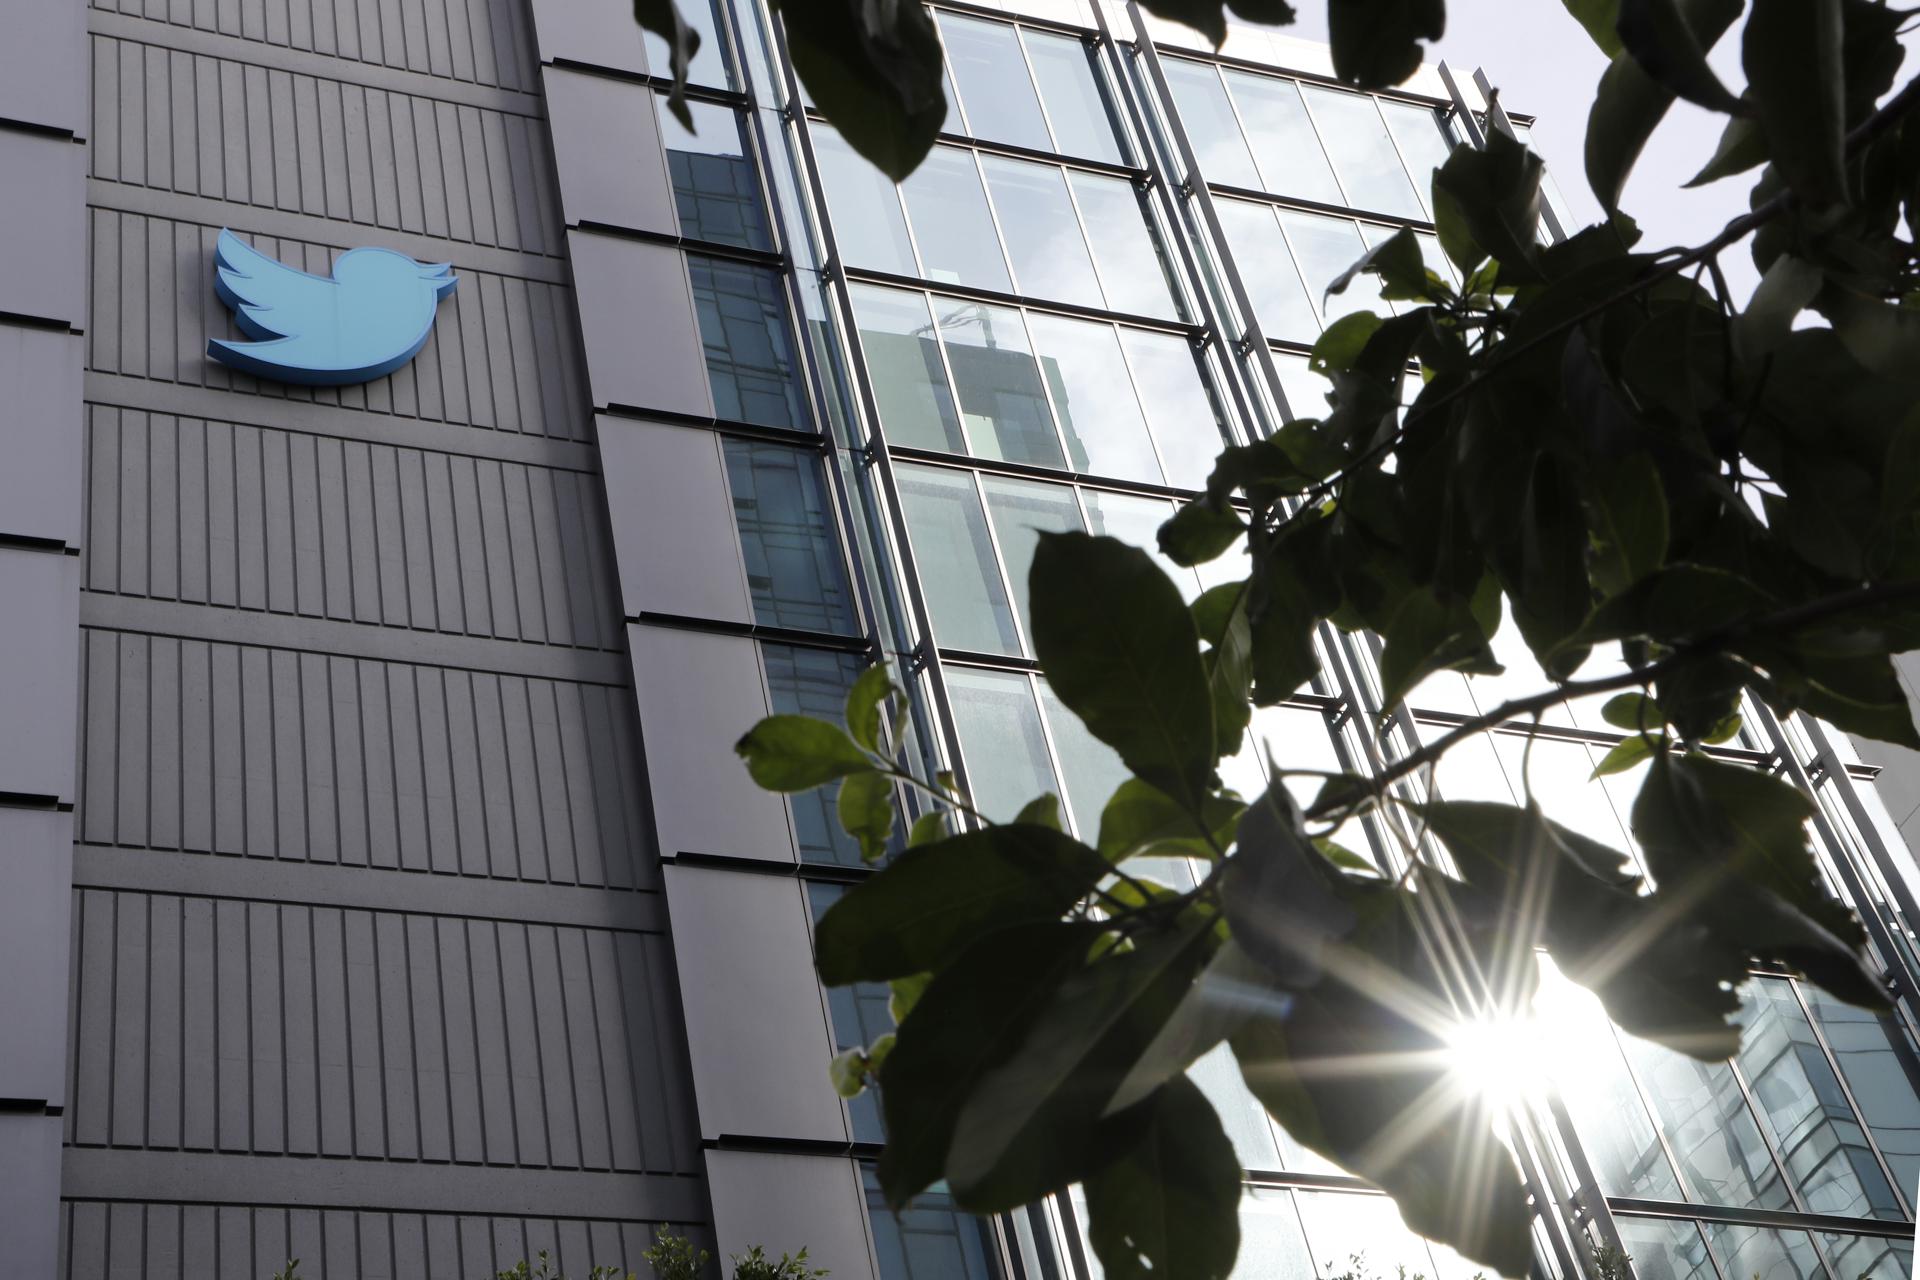 Twitter afronta una demanda de exempleados que reclaman 500 millones de dólares en indemnizaciones